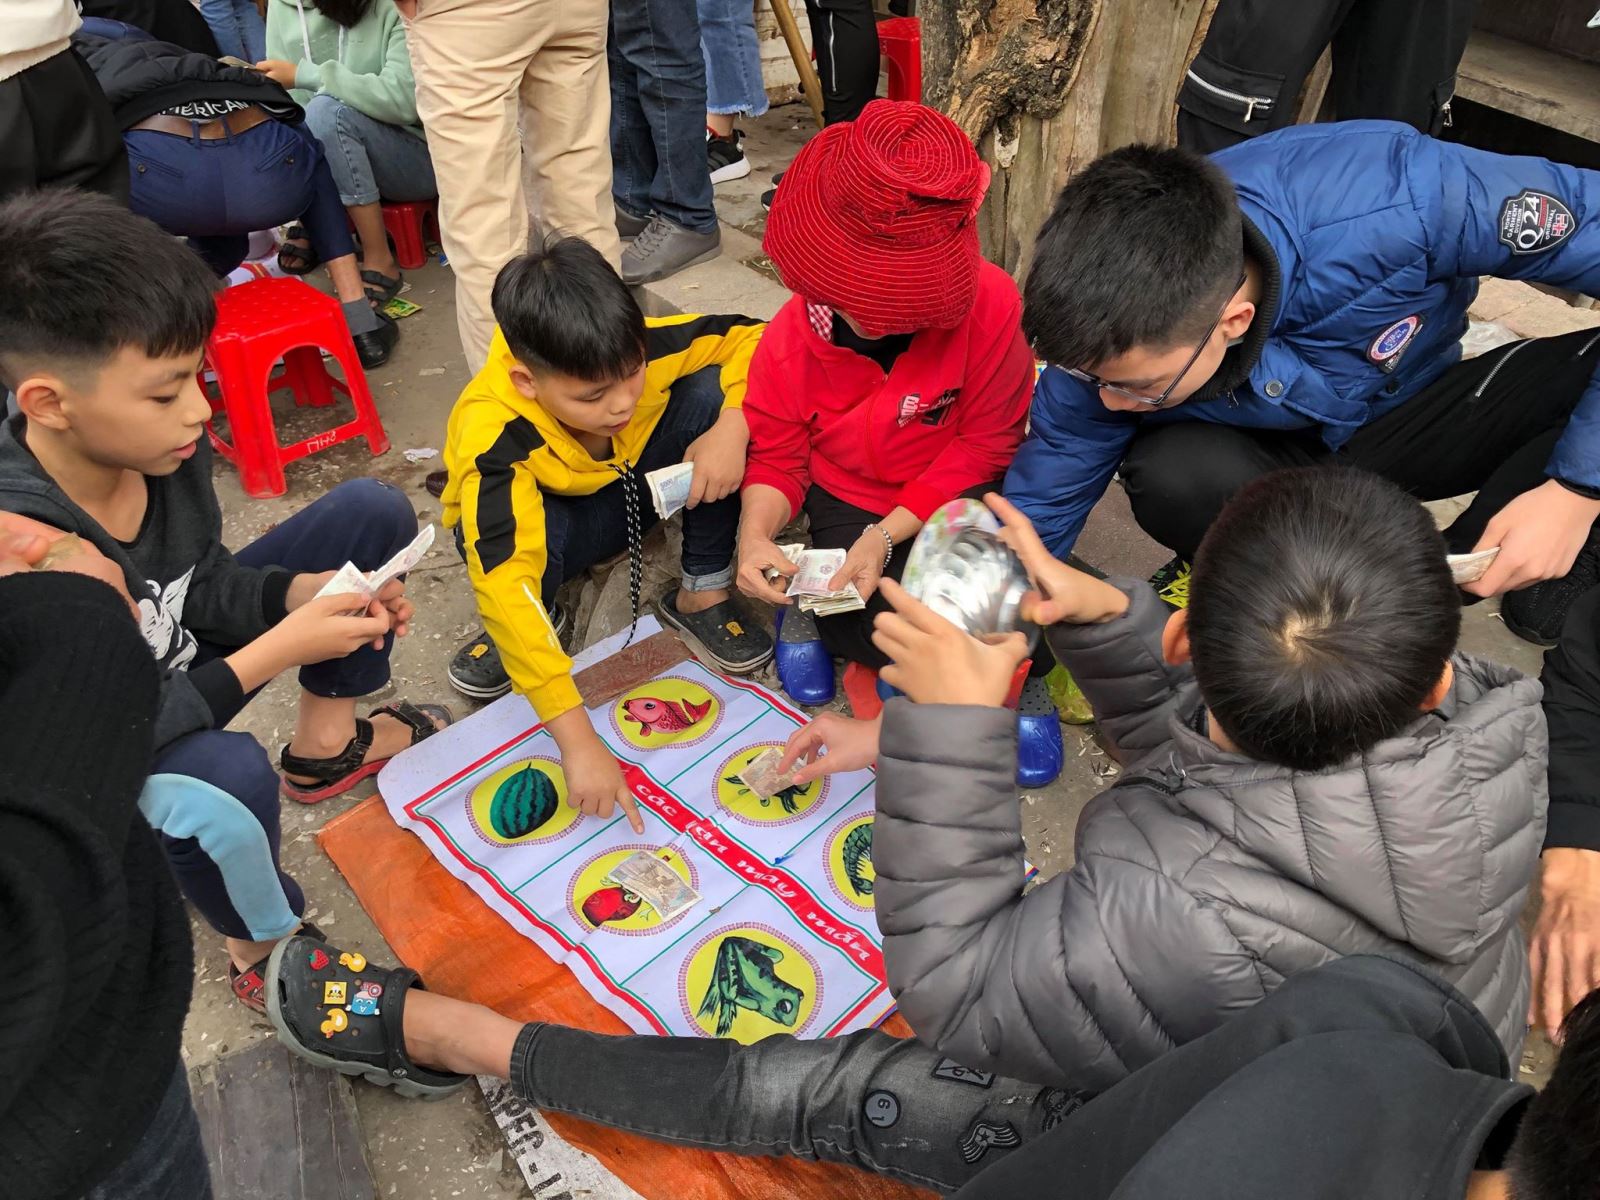 Cờ bạc trá hình đã không còn là vấn đề đáng lo ngại tại Việt Nam. Năm 2024, sự kiểm soát và giám sát các hình thức đánh bạc được nâng cao, giúp cho việc ngăn chặn hoạt động đánh bạc trá hình trở nên hiệu quả hơn. Chính vì vậy, khi bạn tham gia đánh bạc, bạn cũng đang góp phần vào việc xây dựng một xã hội trong sạch, an toàn và phát triển.